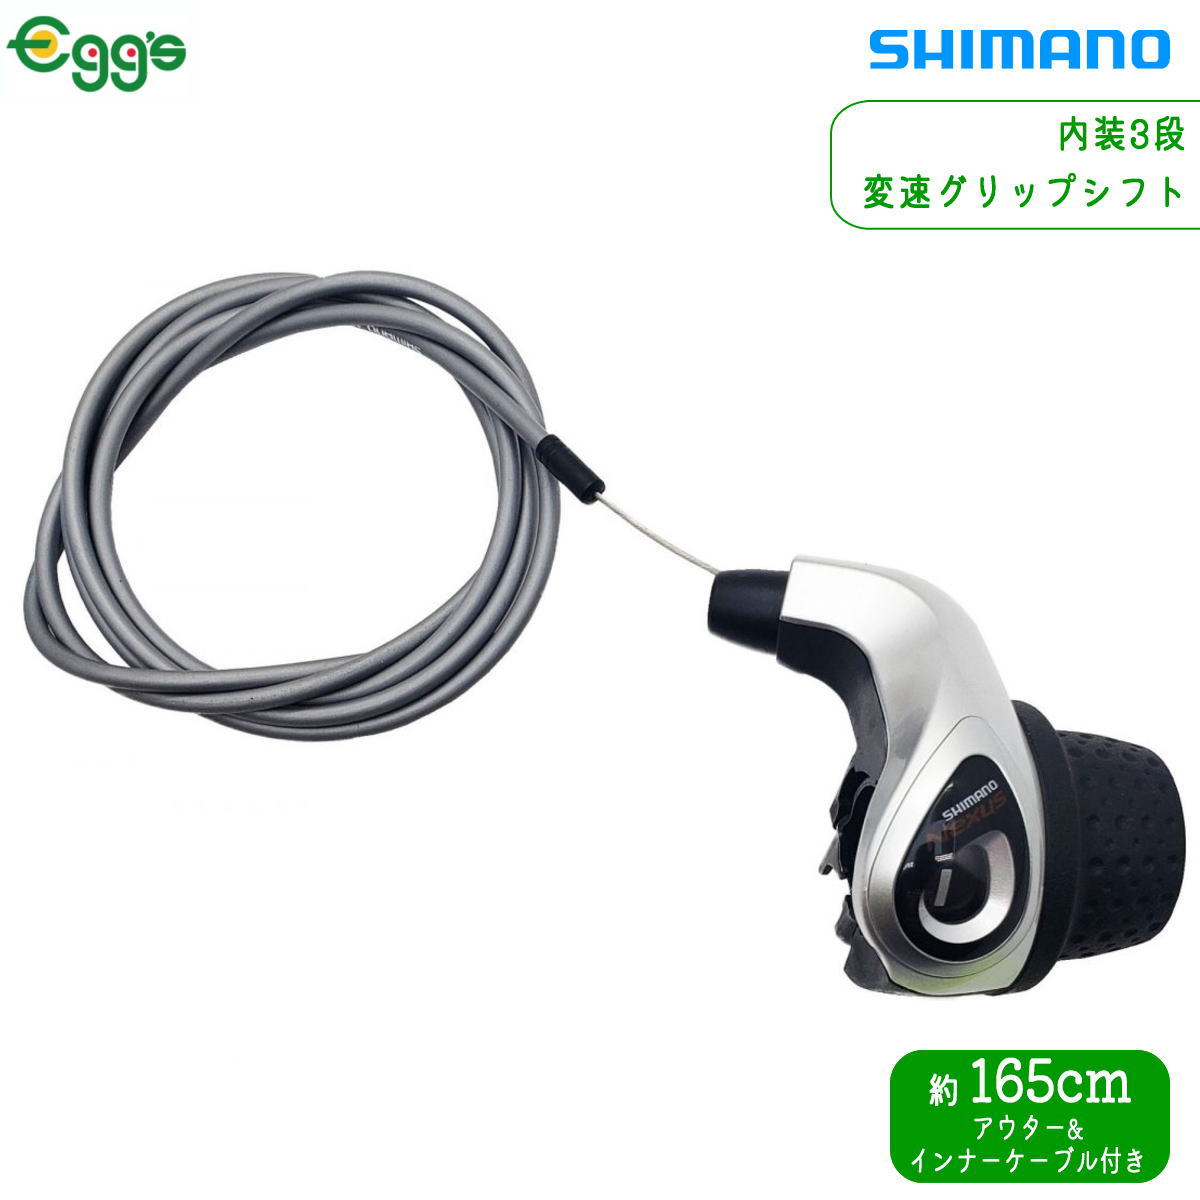 自転車 SHIMANO シマノ 内装3段 変速グリップシフター 165cm シルバー ママチャリ 軽快車 ギア 変速 3段